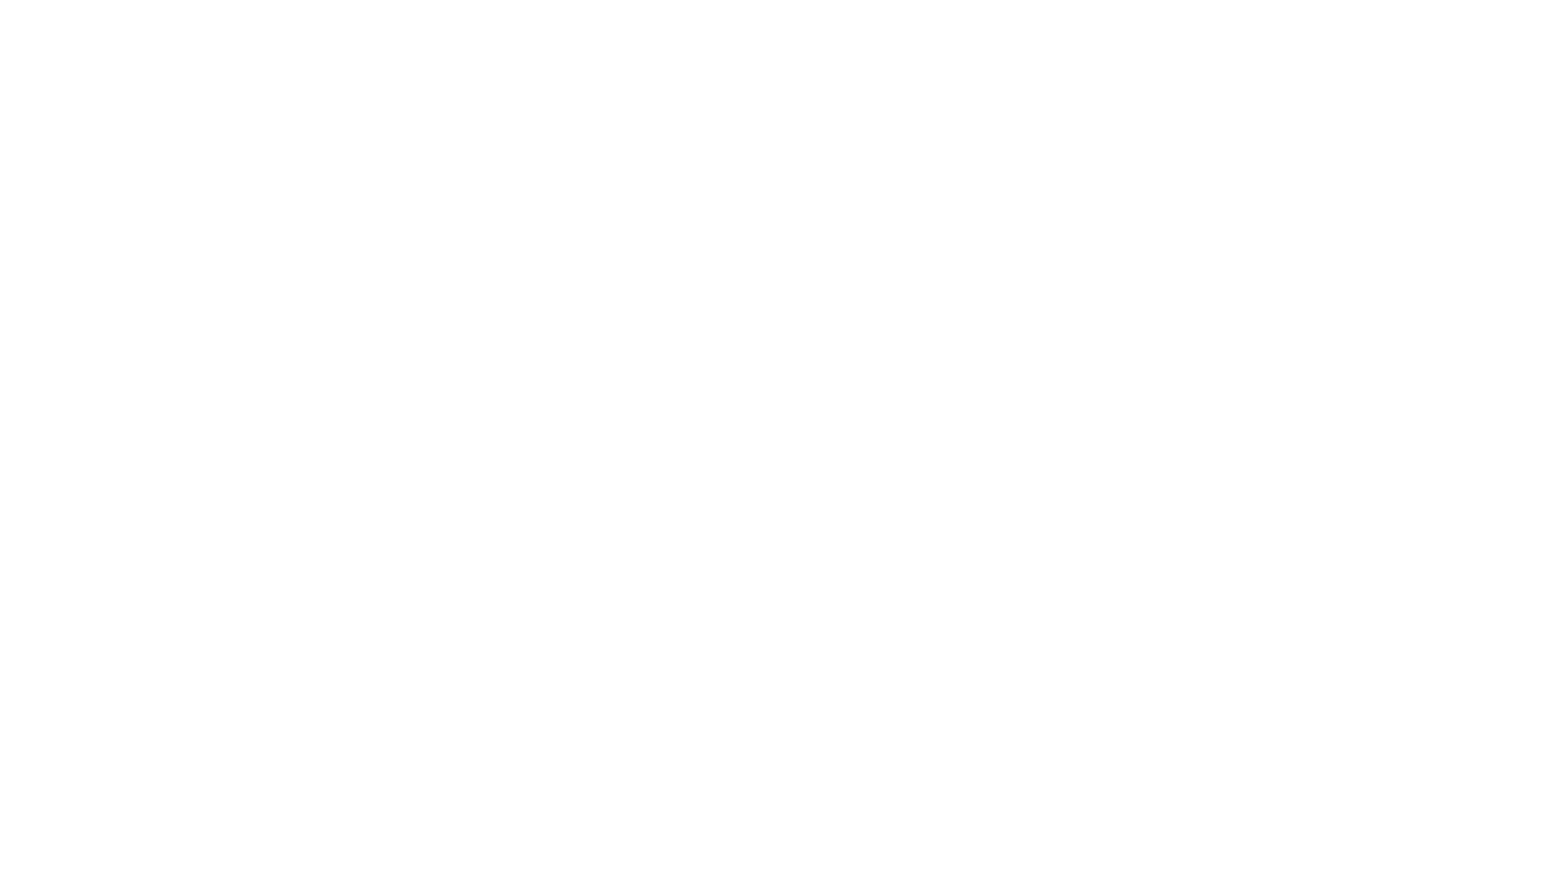 Ведущий научный сотрудник лаборатории физики Солнца, доктор физико-математических наук Валерий Котов во время подготовки к работе башенного солнечного телескопа для спектральных и монохроматических наблюдений в «Крымской астрофизической обсерватории РАН» в поселке Научный